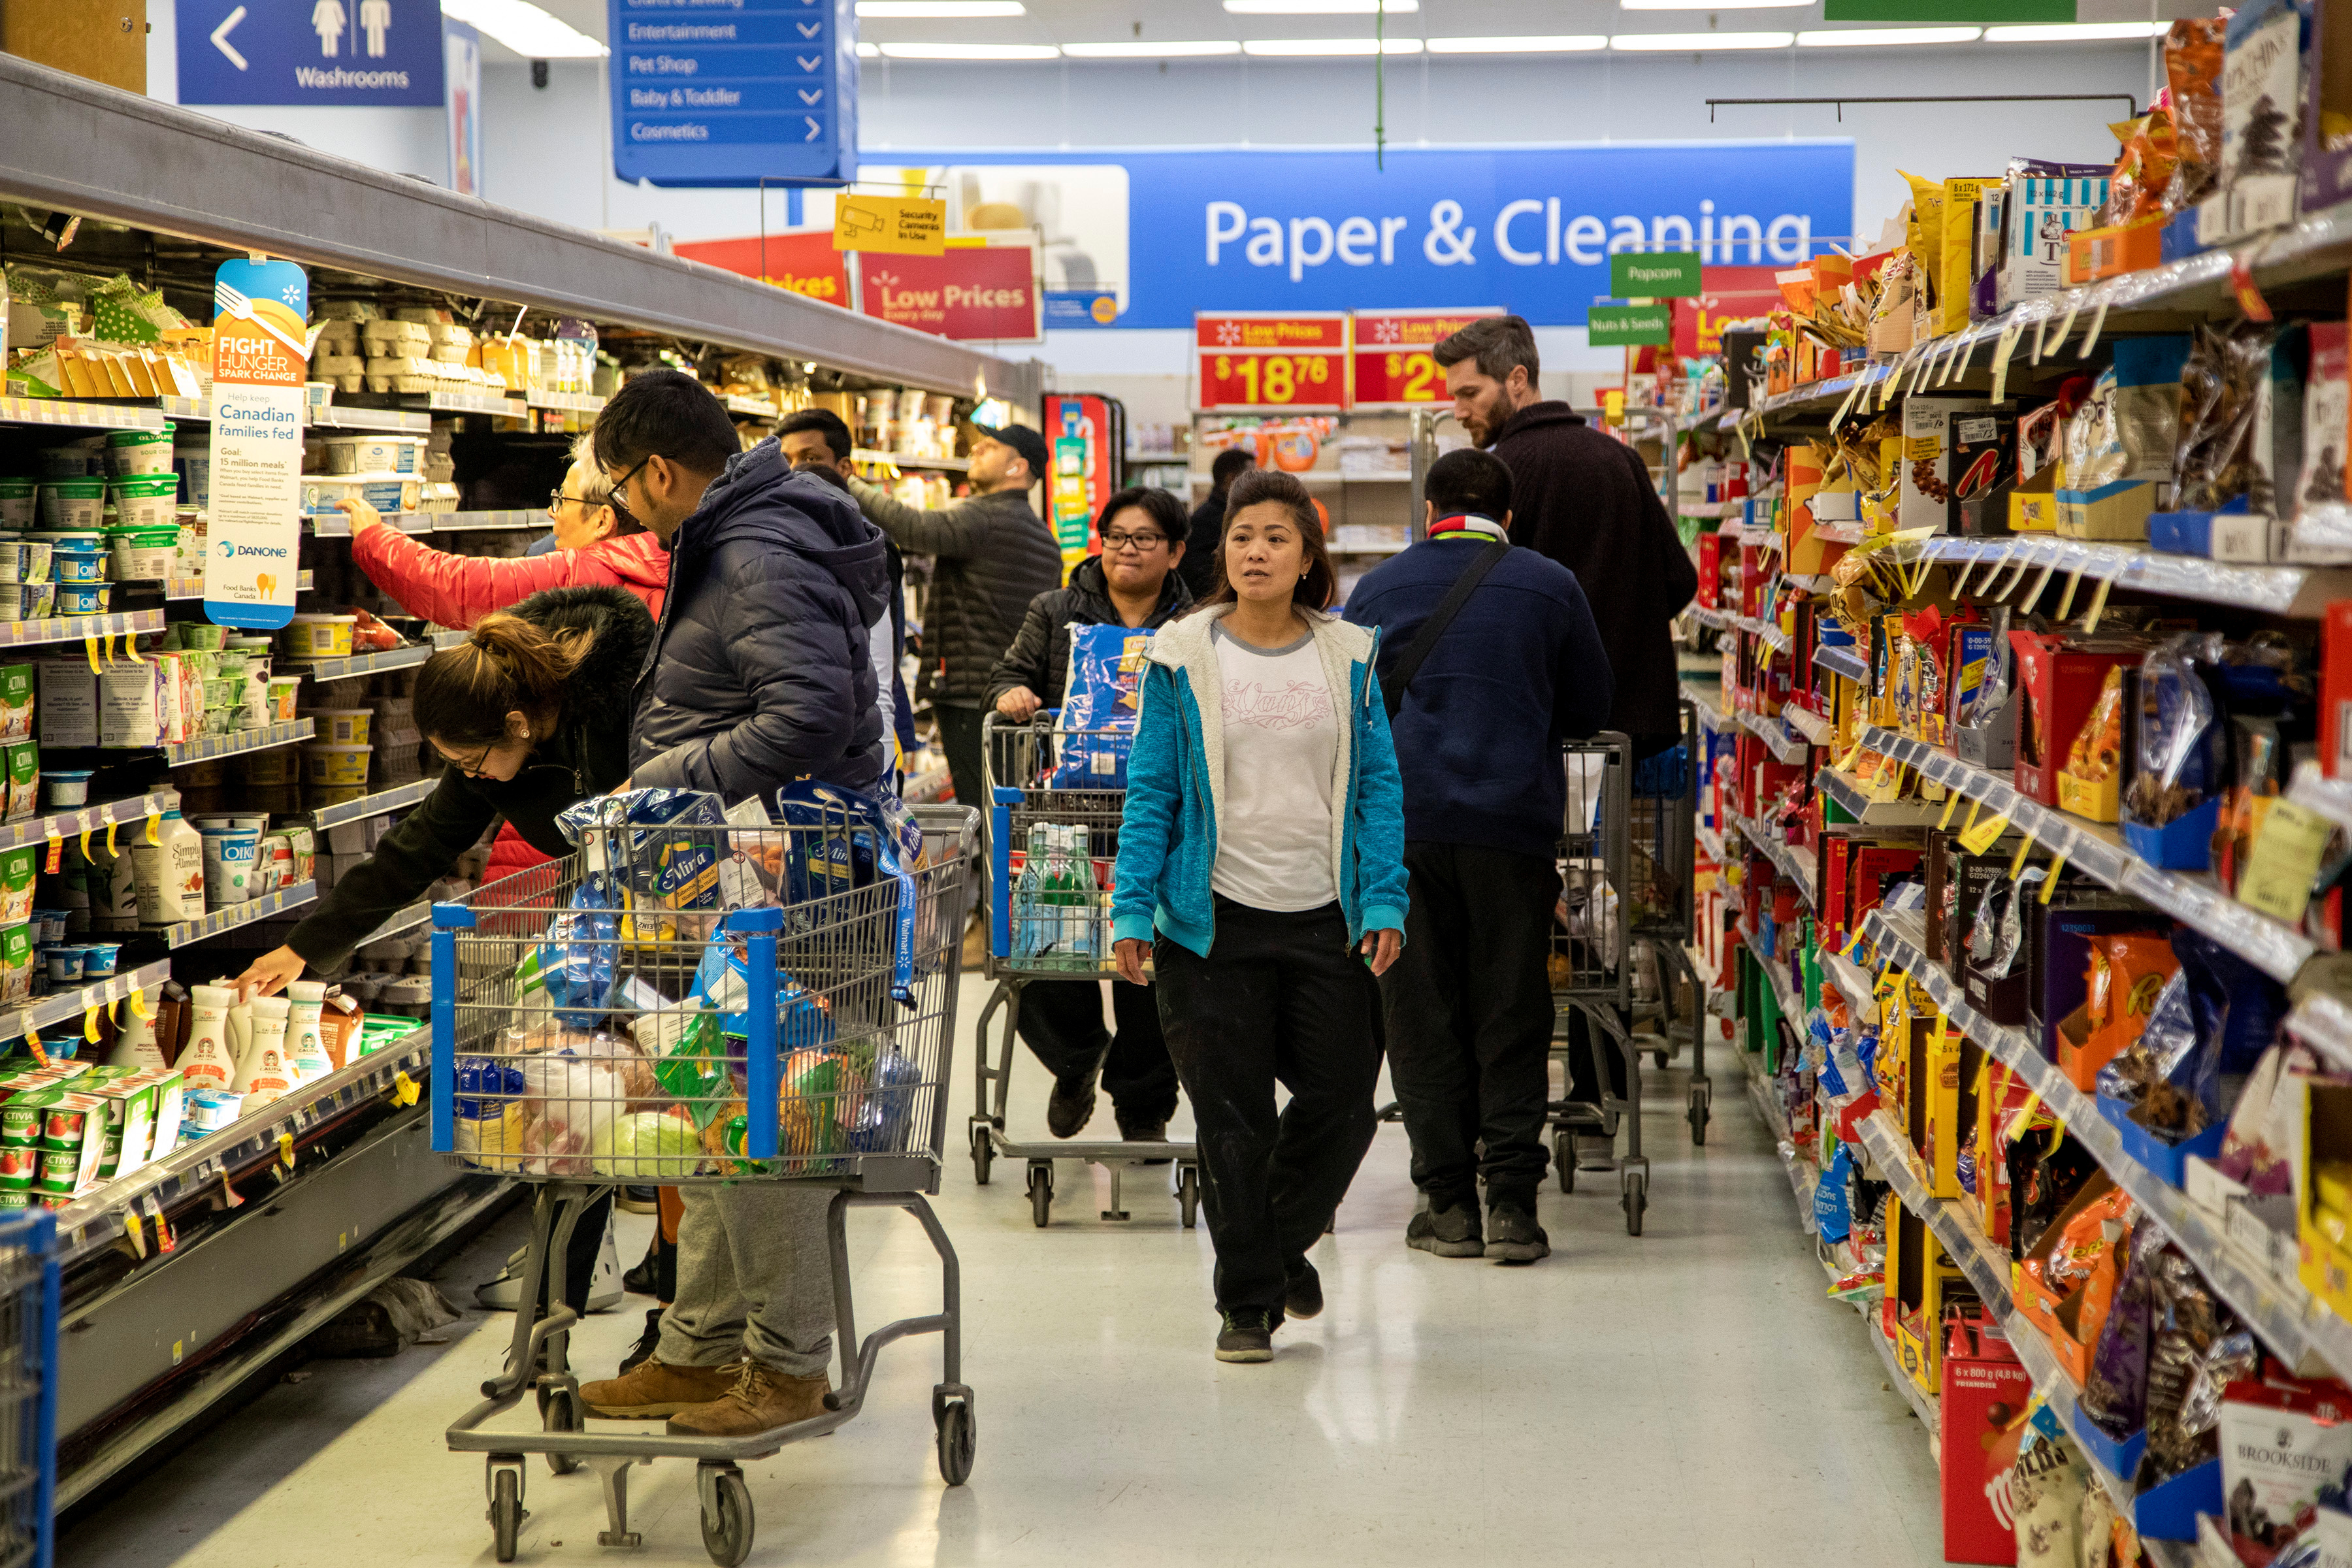 People shop at a Walmart Supercentre amid coronavirus fears spreading in Toronto, Ontario, Canada March 13, 2020.  REUTERS/Carlos Osorio